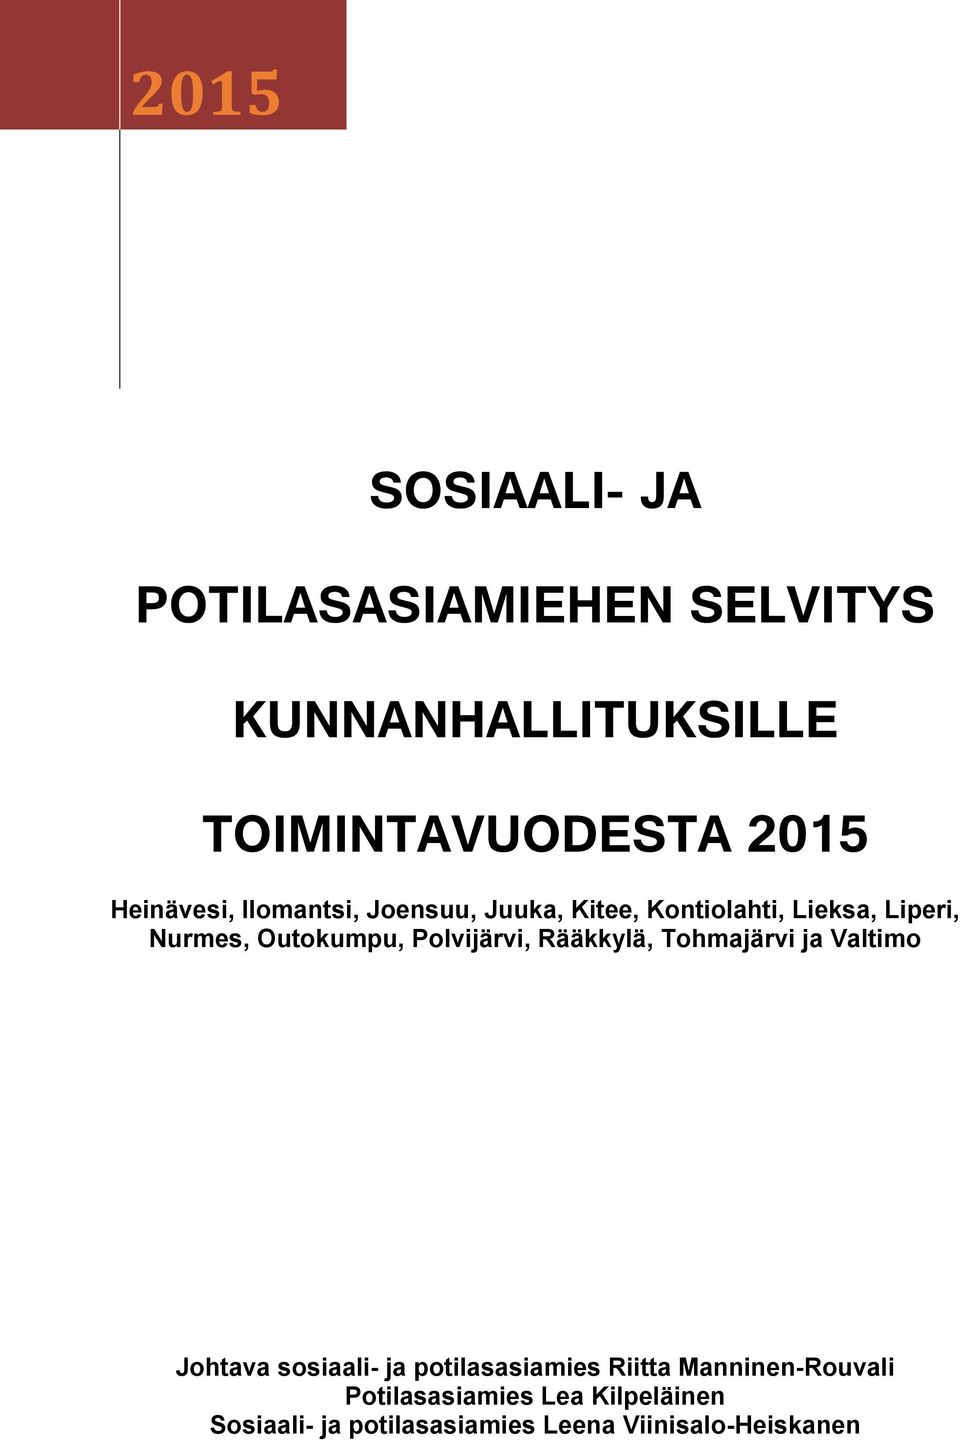 Polvijärvi, Rääkkylä, Tohmajärvi ja Valtimo Johtava sosiaali- ja potilasasiamies Riitta